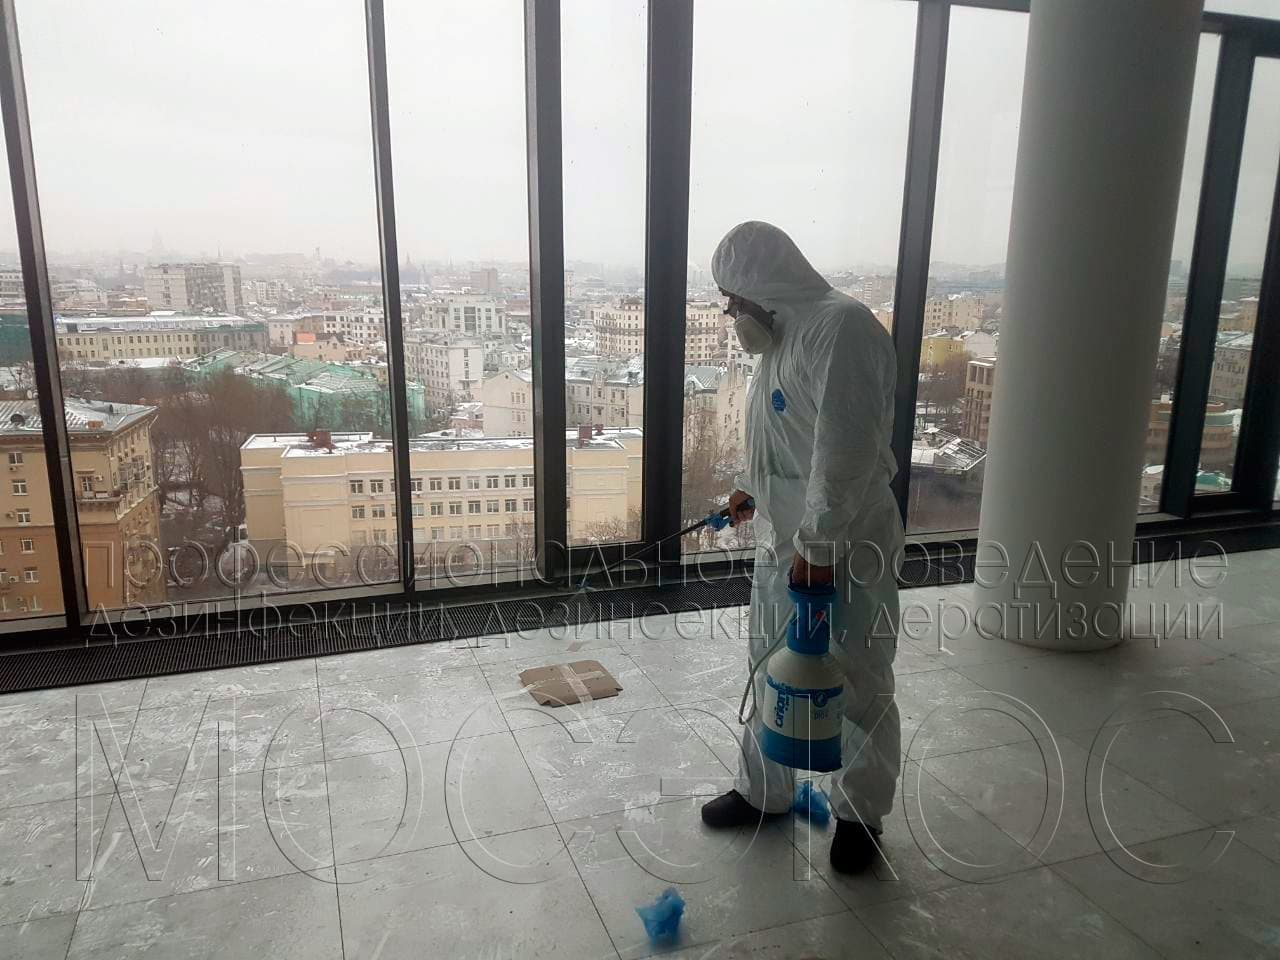 Пест-контроль (Pest Control) в Звенигороде